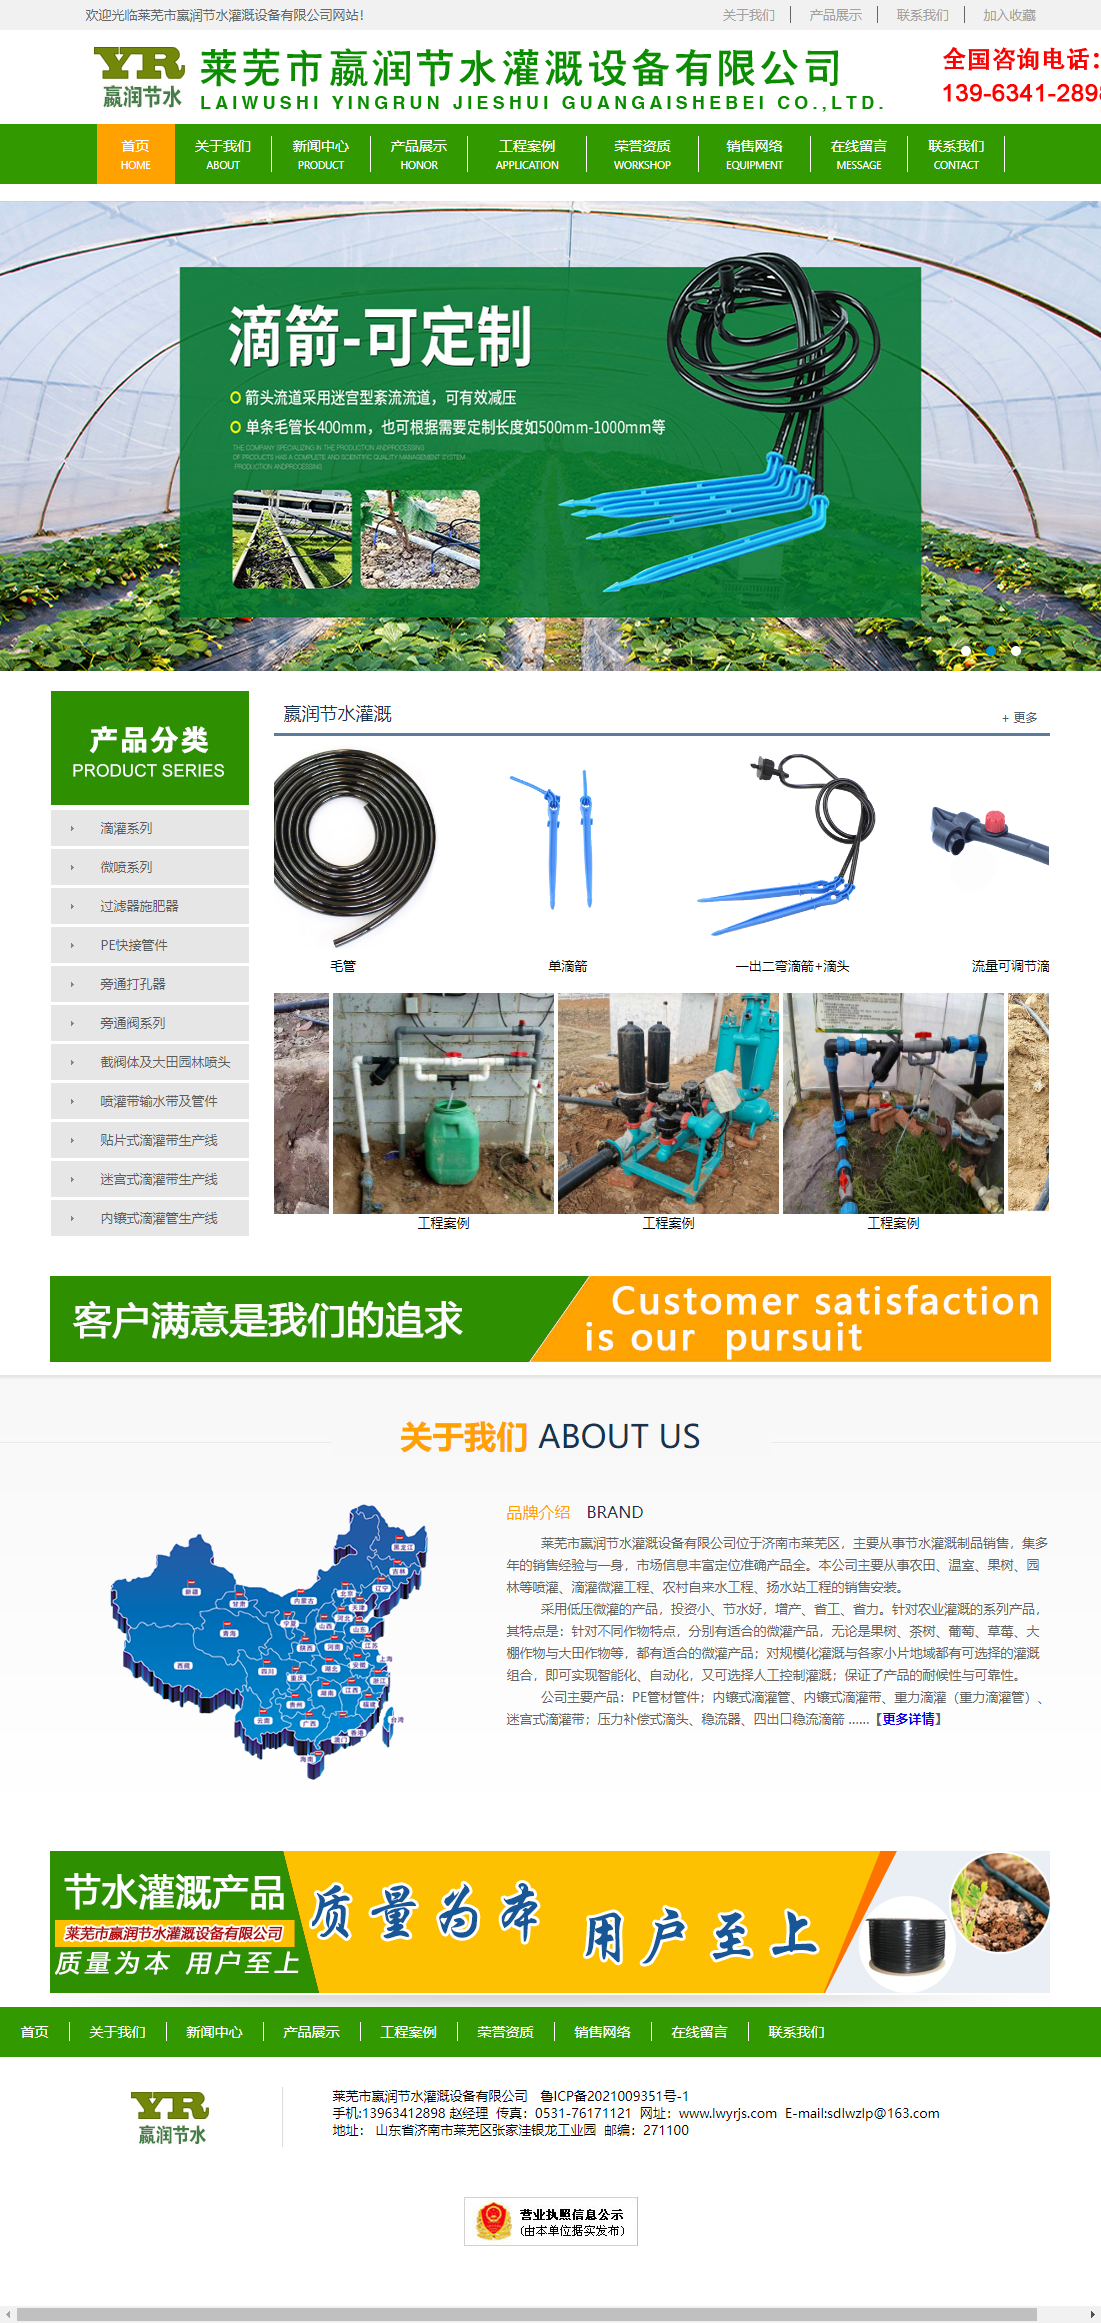 莱芜市嬴润节水灌溉设备有限公司网站案例